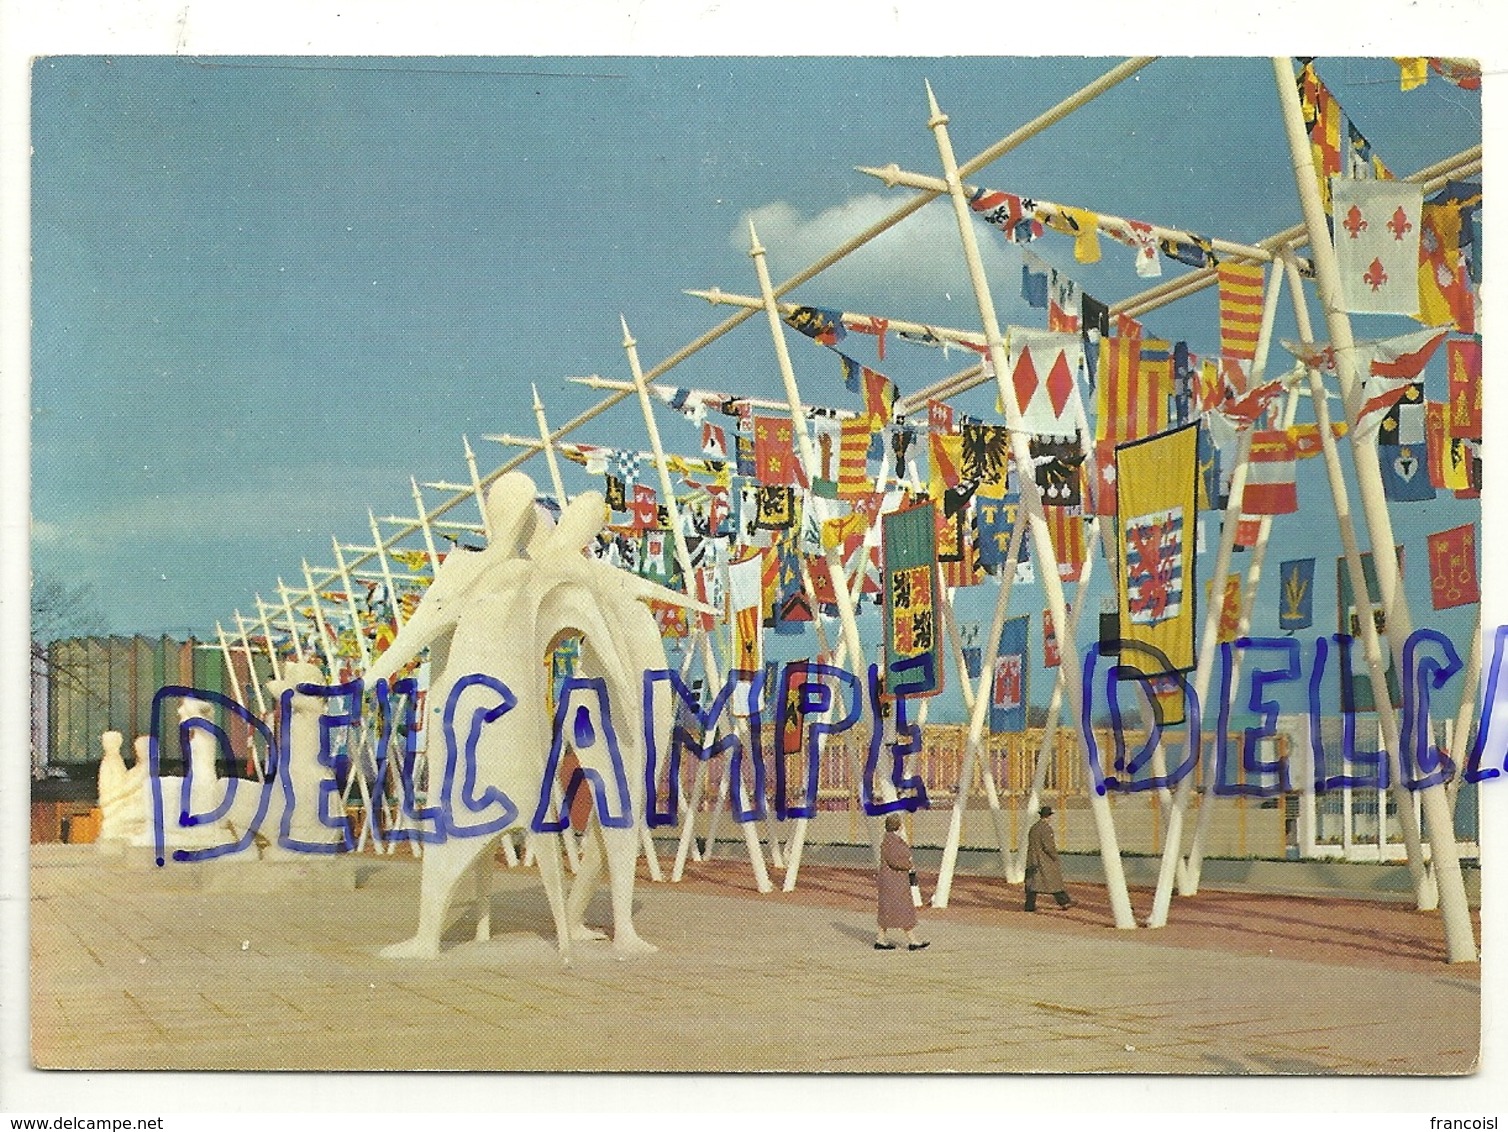 Bruxelles.Exposition Universelle De 1958. Les Oriflammes De La Terrasse De L'Esplanade. Egicarte - Expositions